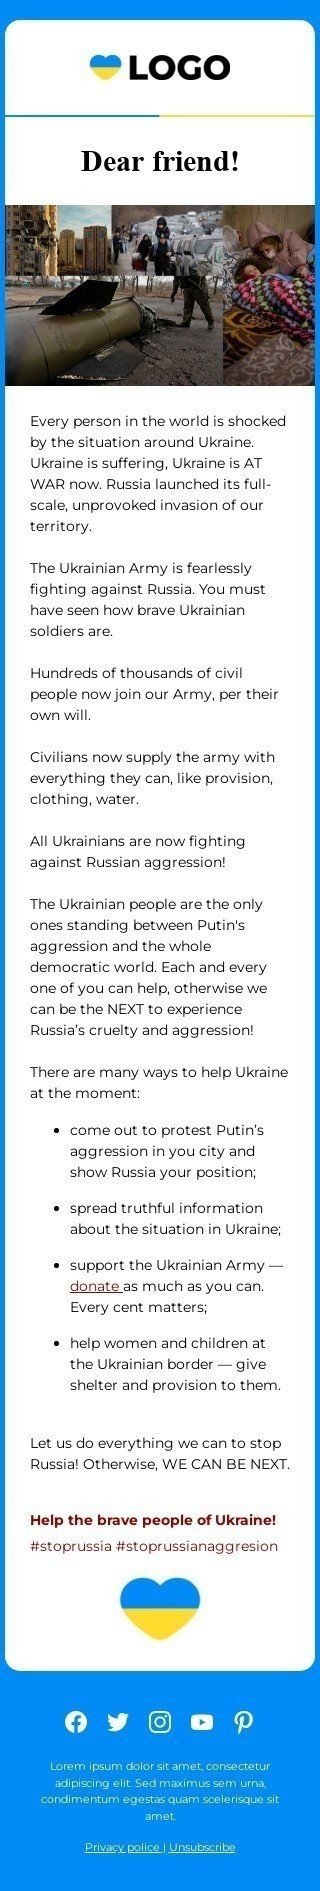 Email-шаблон "Что происходит в Украине сегодня и как можно помочь" мобильный вид